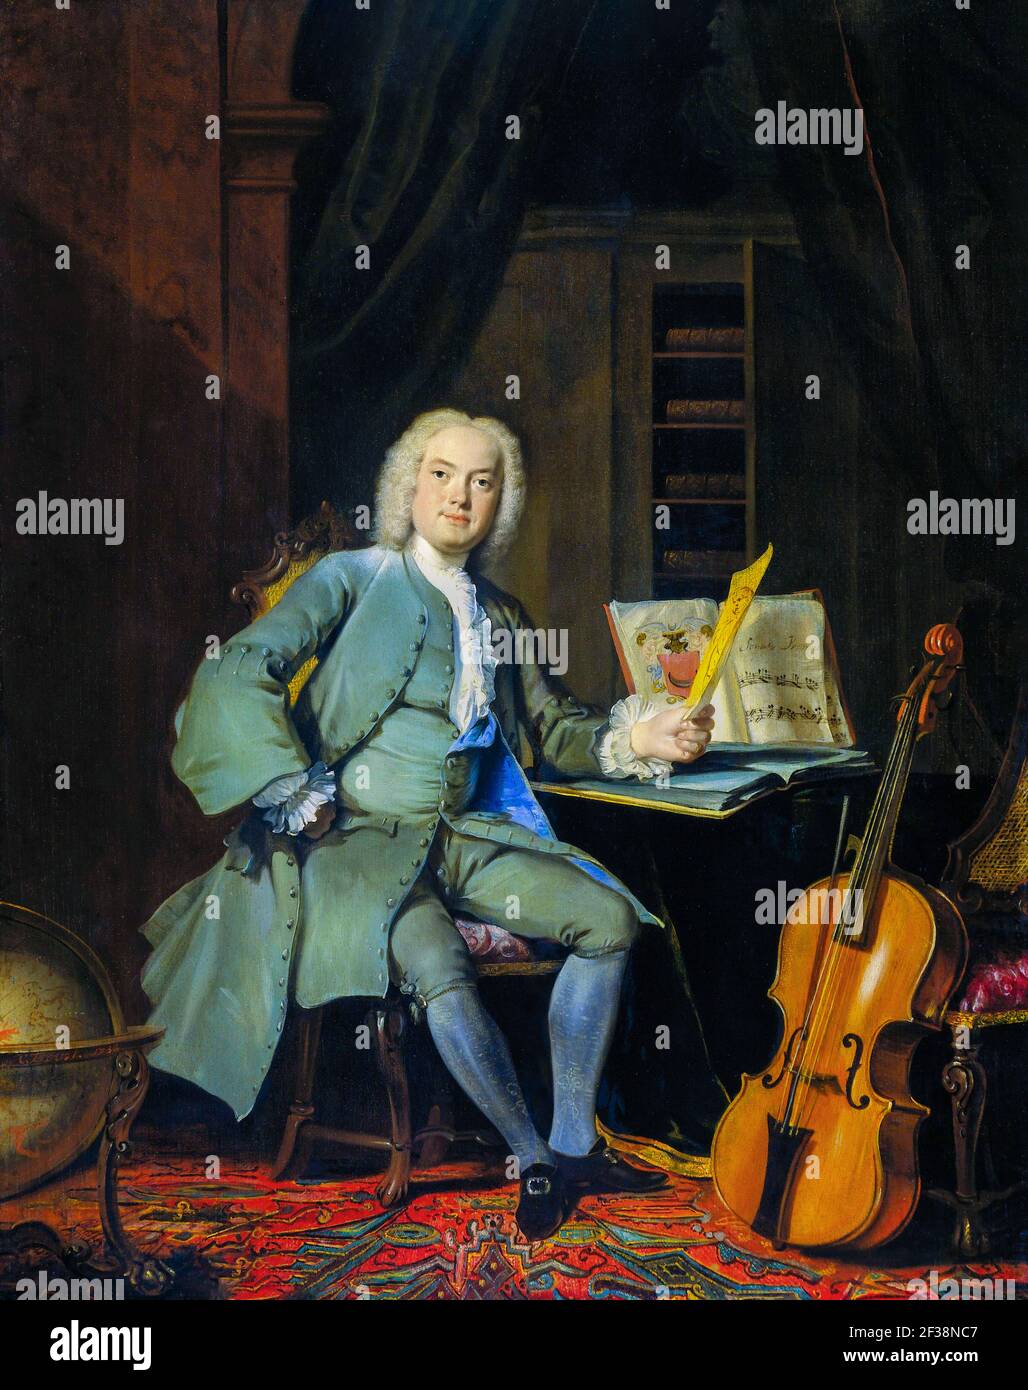 Ritratto di un amante dell'arte e della musica, probabilmente uno dei tre fratelli della famiglia Mennonita Van der Mersch di Amsterdam. L'uomo è ritratto pieno Foto Stock